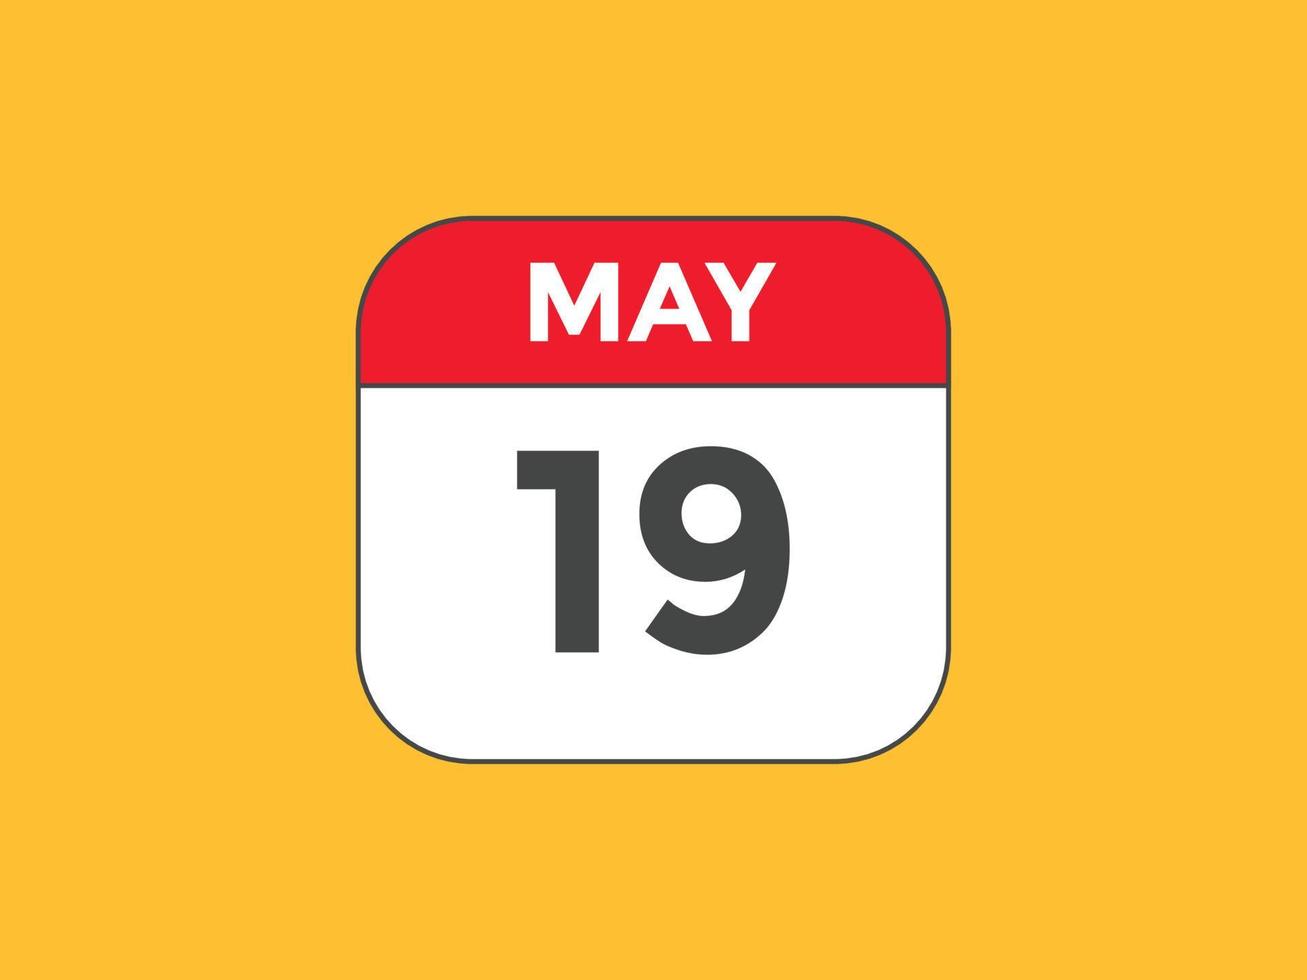 may 19 calendar reminder. 19th may daily calendar icon template. Calendar 19th may icon Design template. Vector illustration